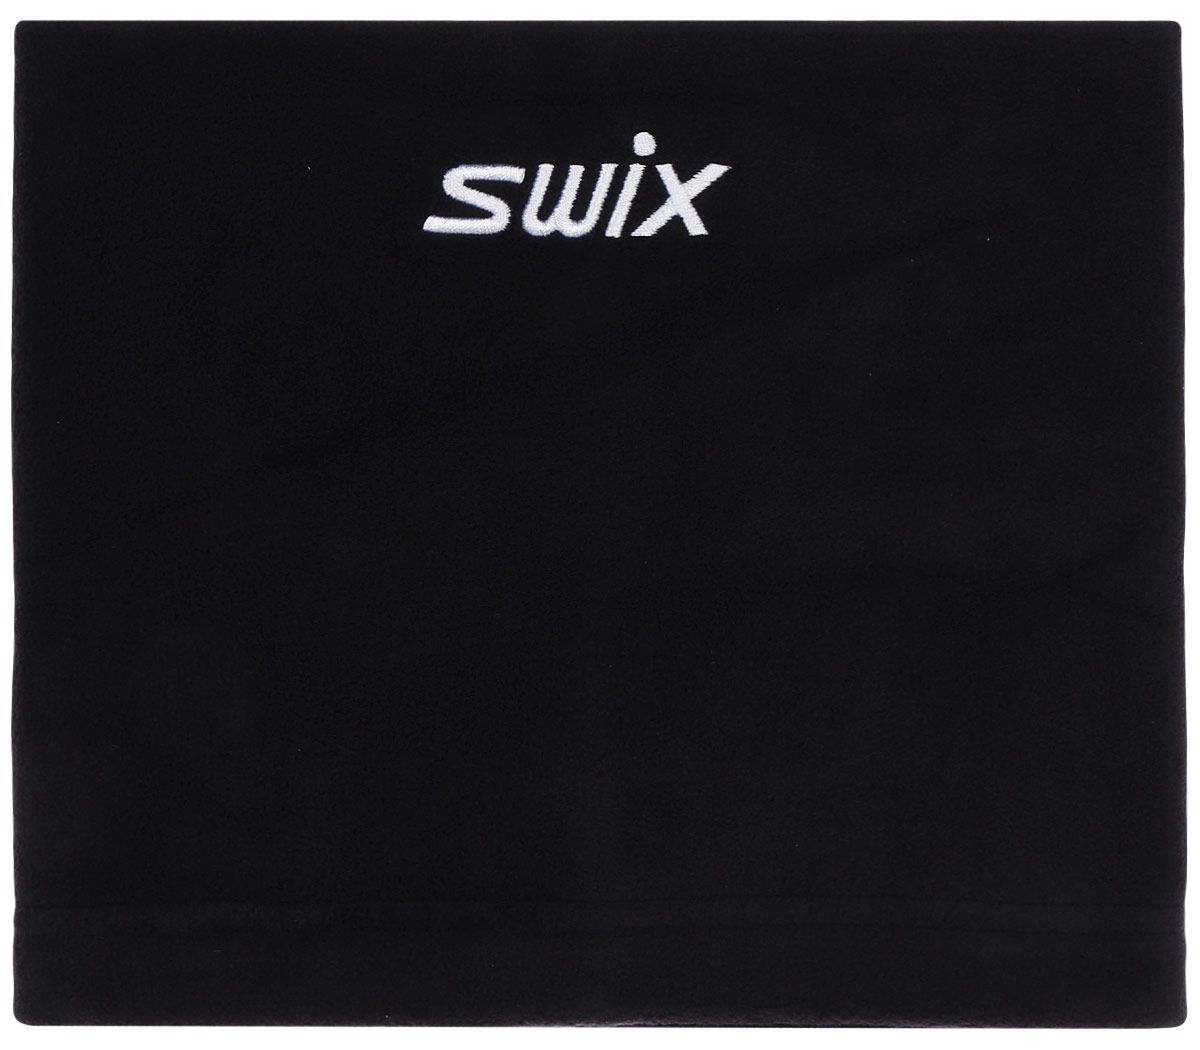  Swix Fresco, : . 46433-10000.  